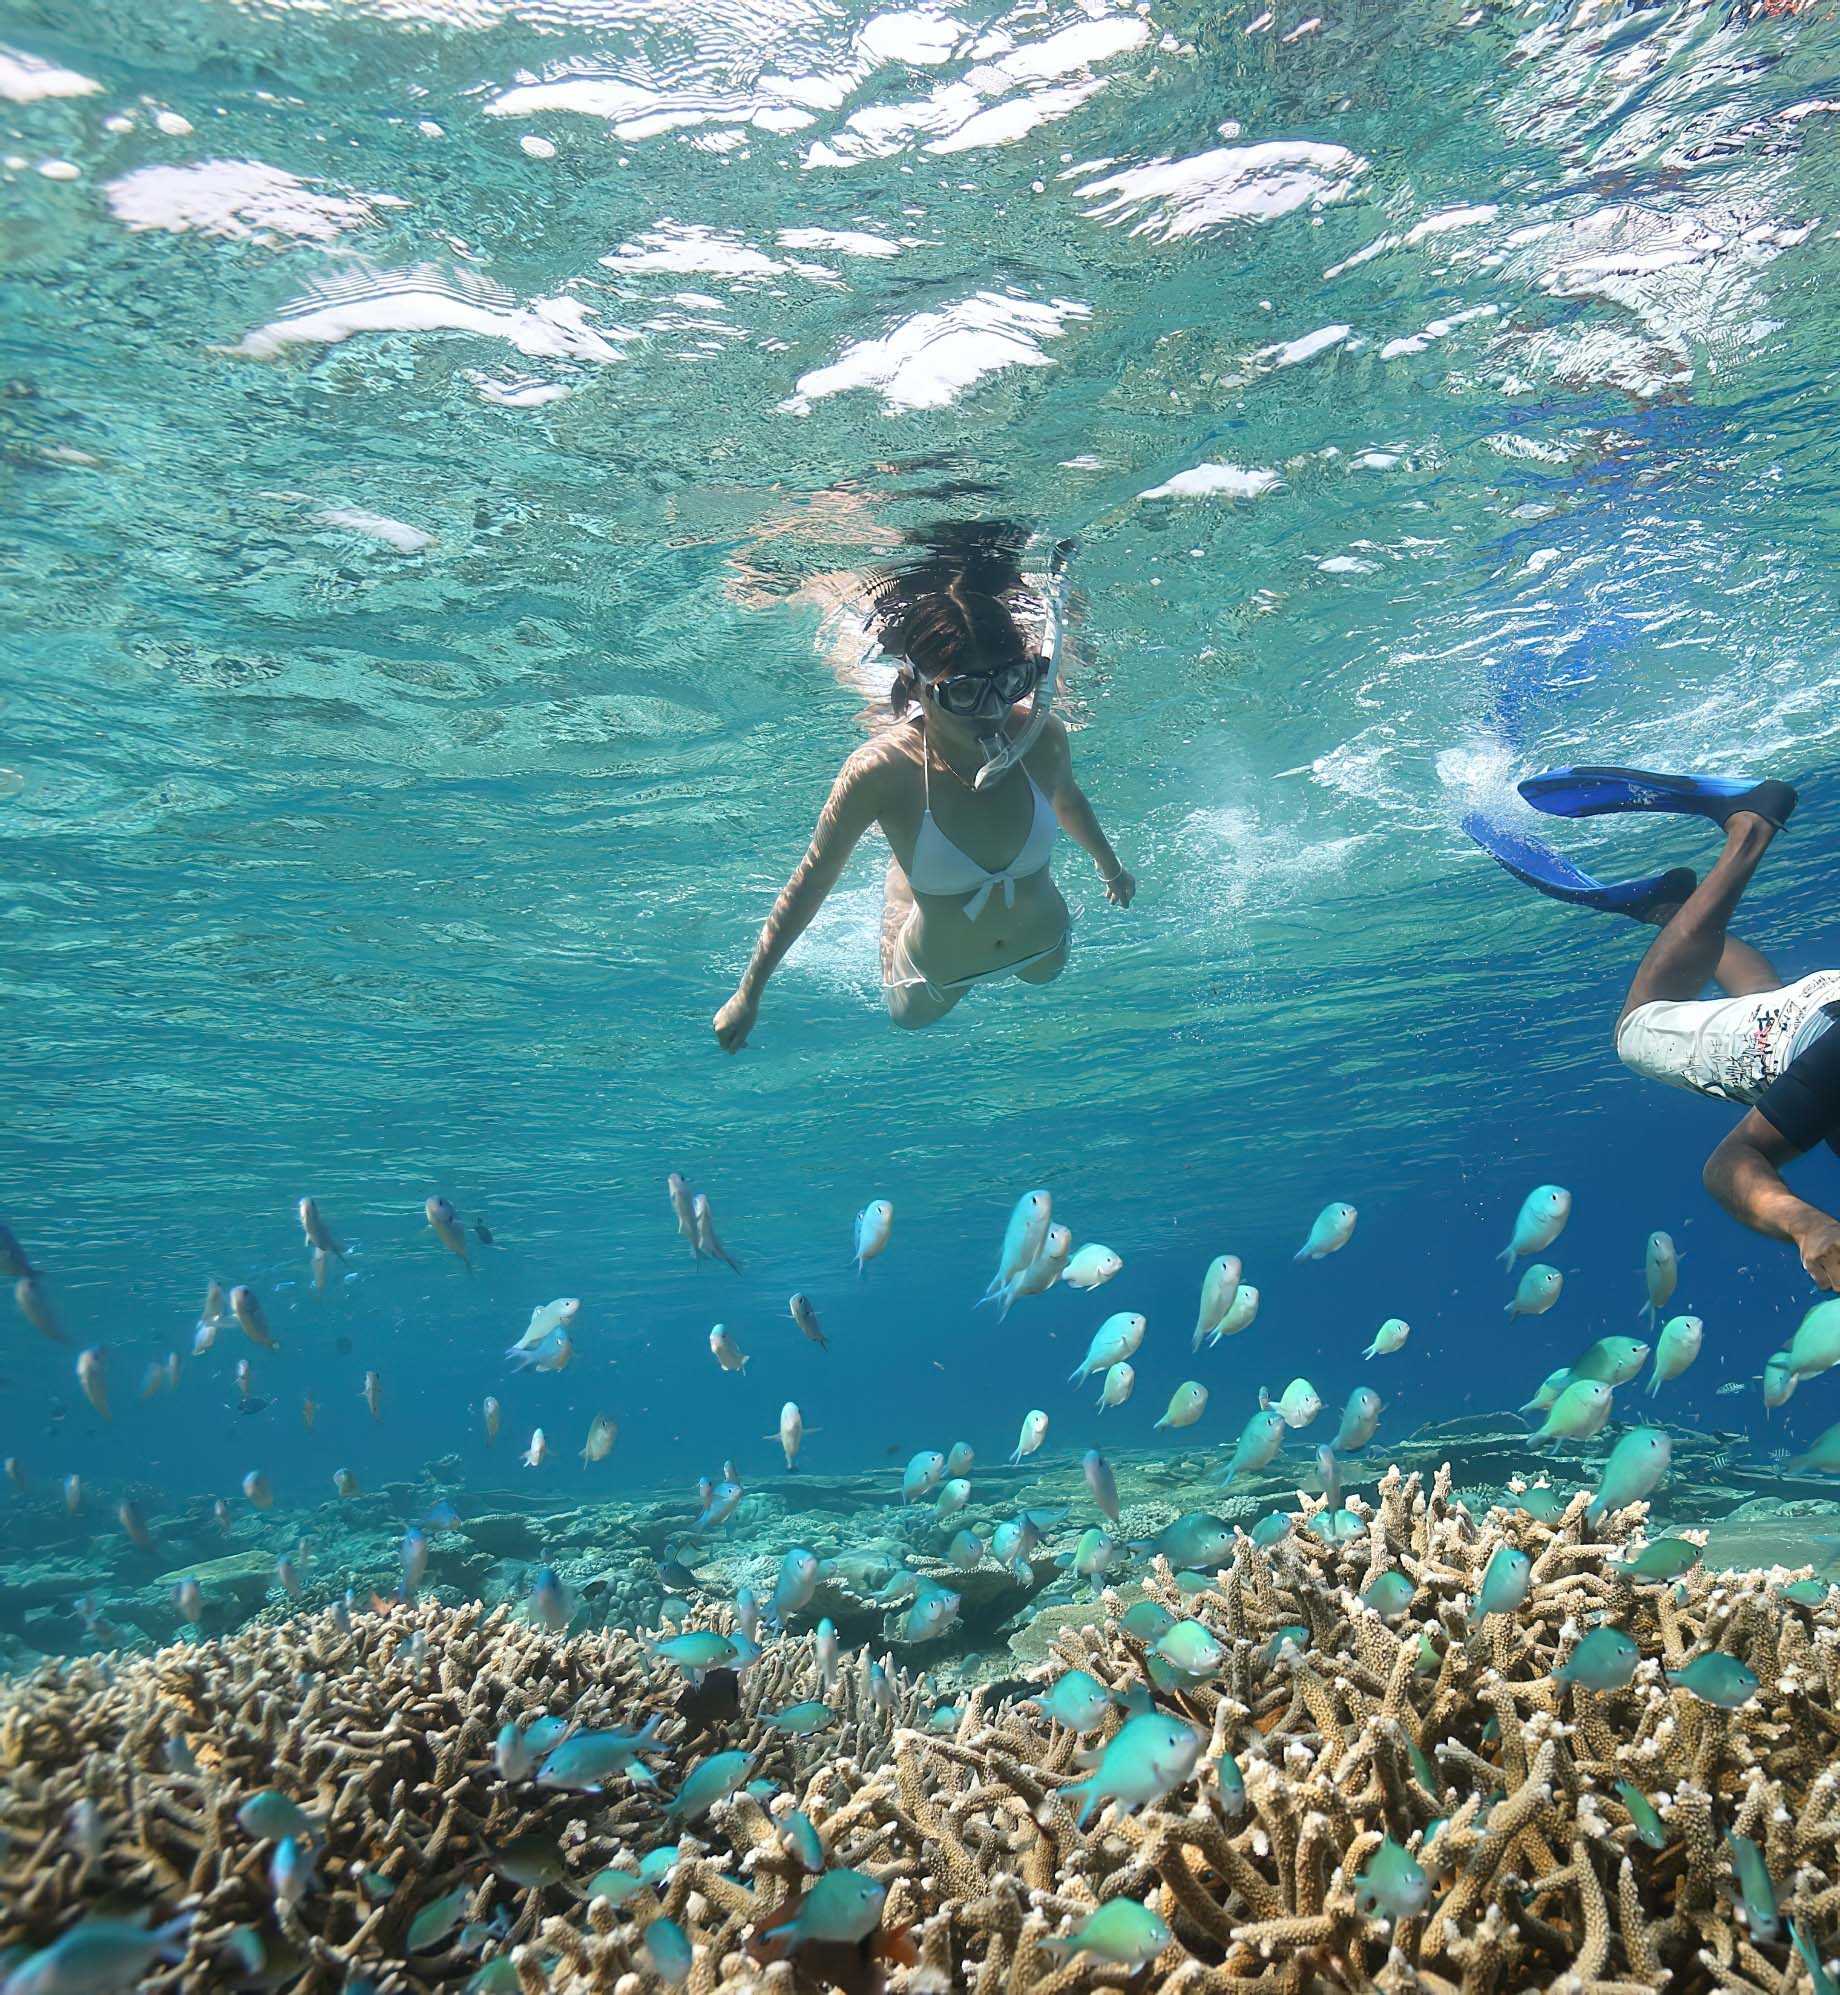 Anantara Kihavah Maldives Villas Resort – Baa Atoll, Maldives – Lagoon Snorkelling